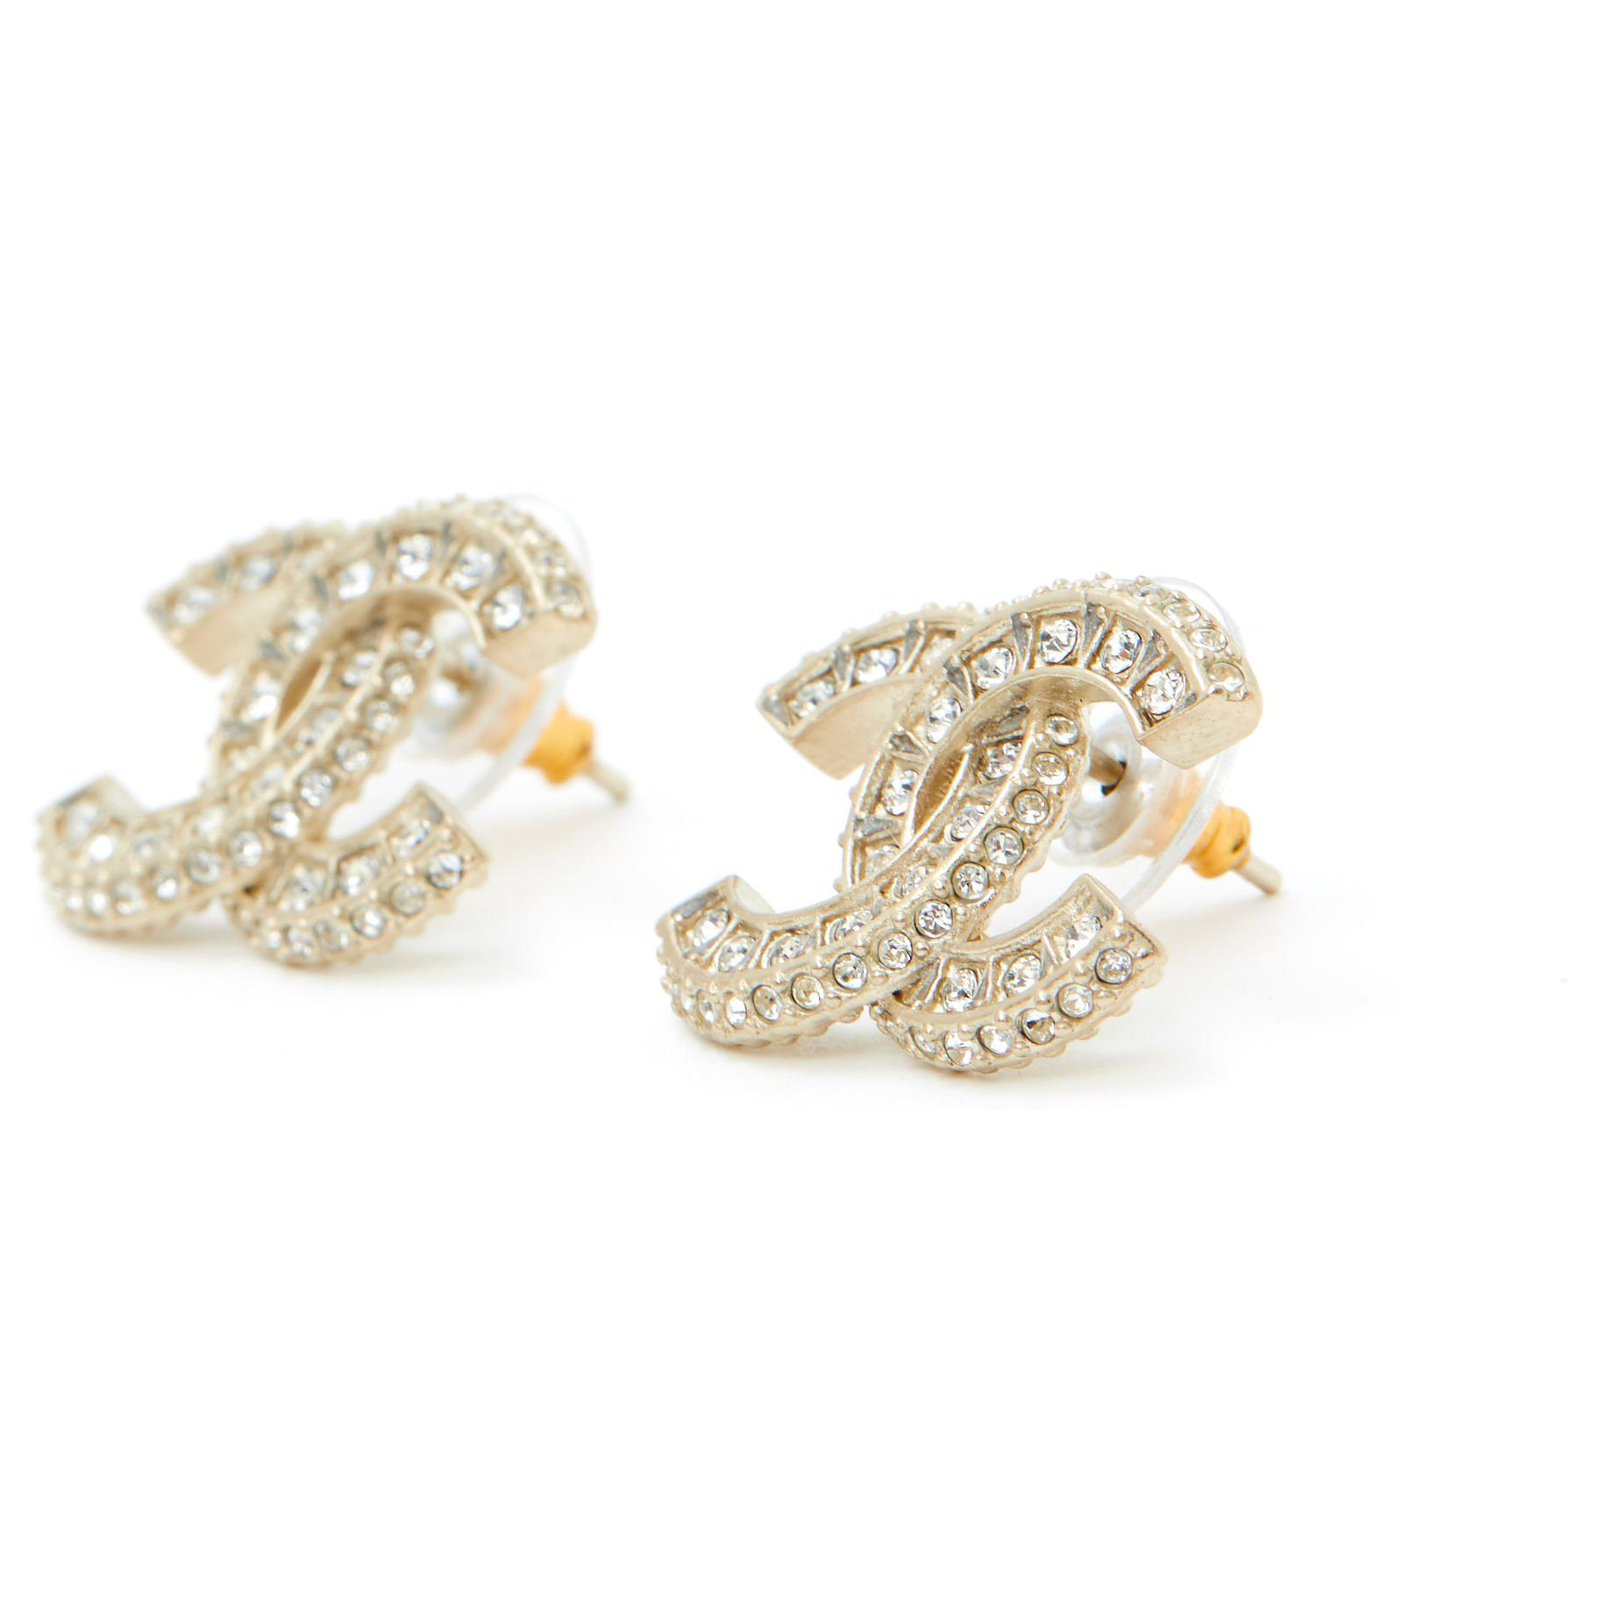 Chanel CC rhinestone earring